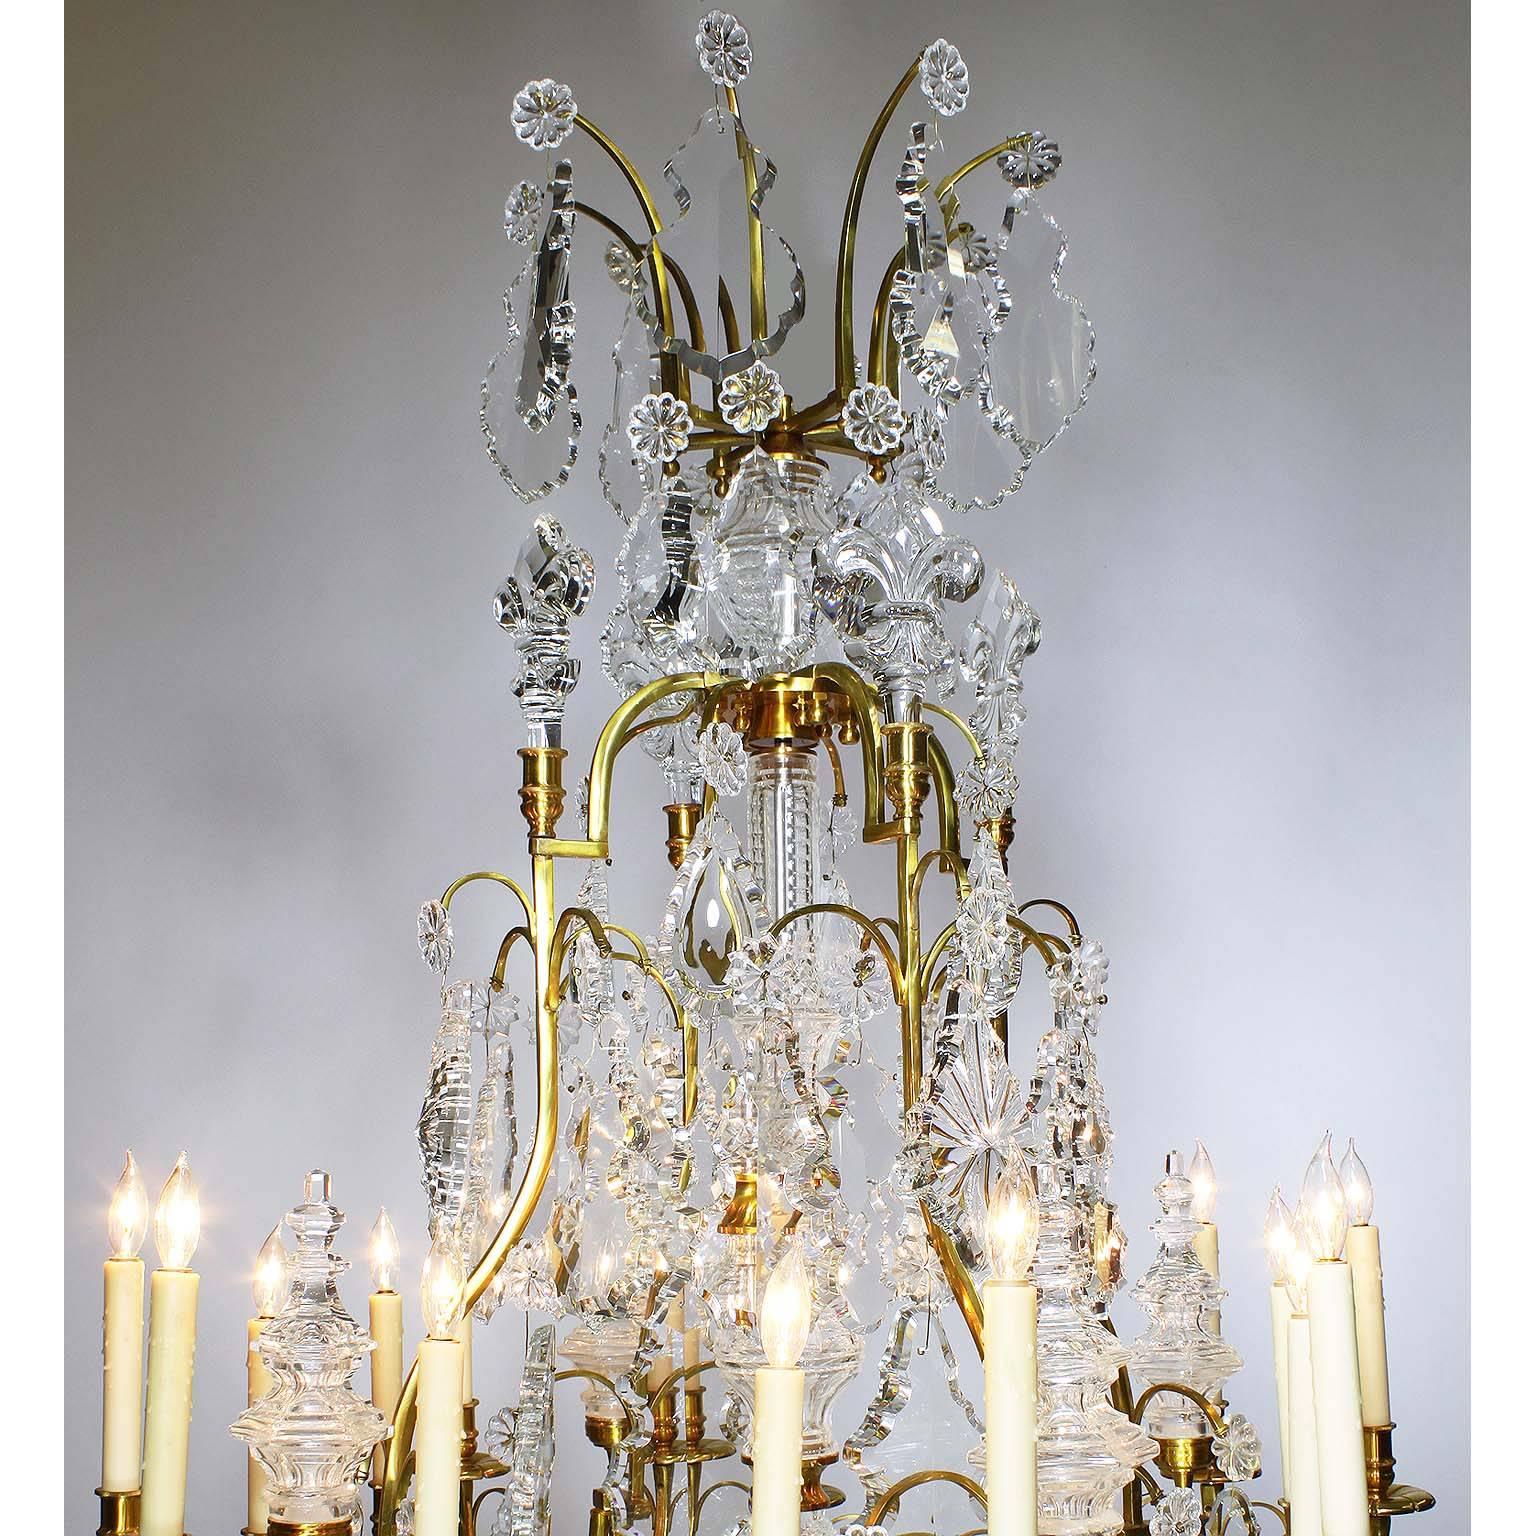 Ein großes Paar sechzehnflammiger Kronleuchter aus vergoldeter Bronze und geschliffenem Glas im Stil Louis XV. Die massiven Bronzerahmen sind mit Anhängern, geformten Türmen, Fleur de lis und einer zentralen Stütze versehen, nach Art von Baccarat.